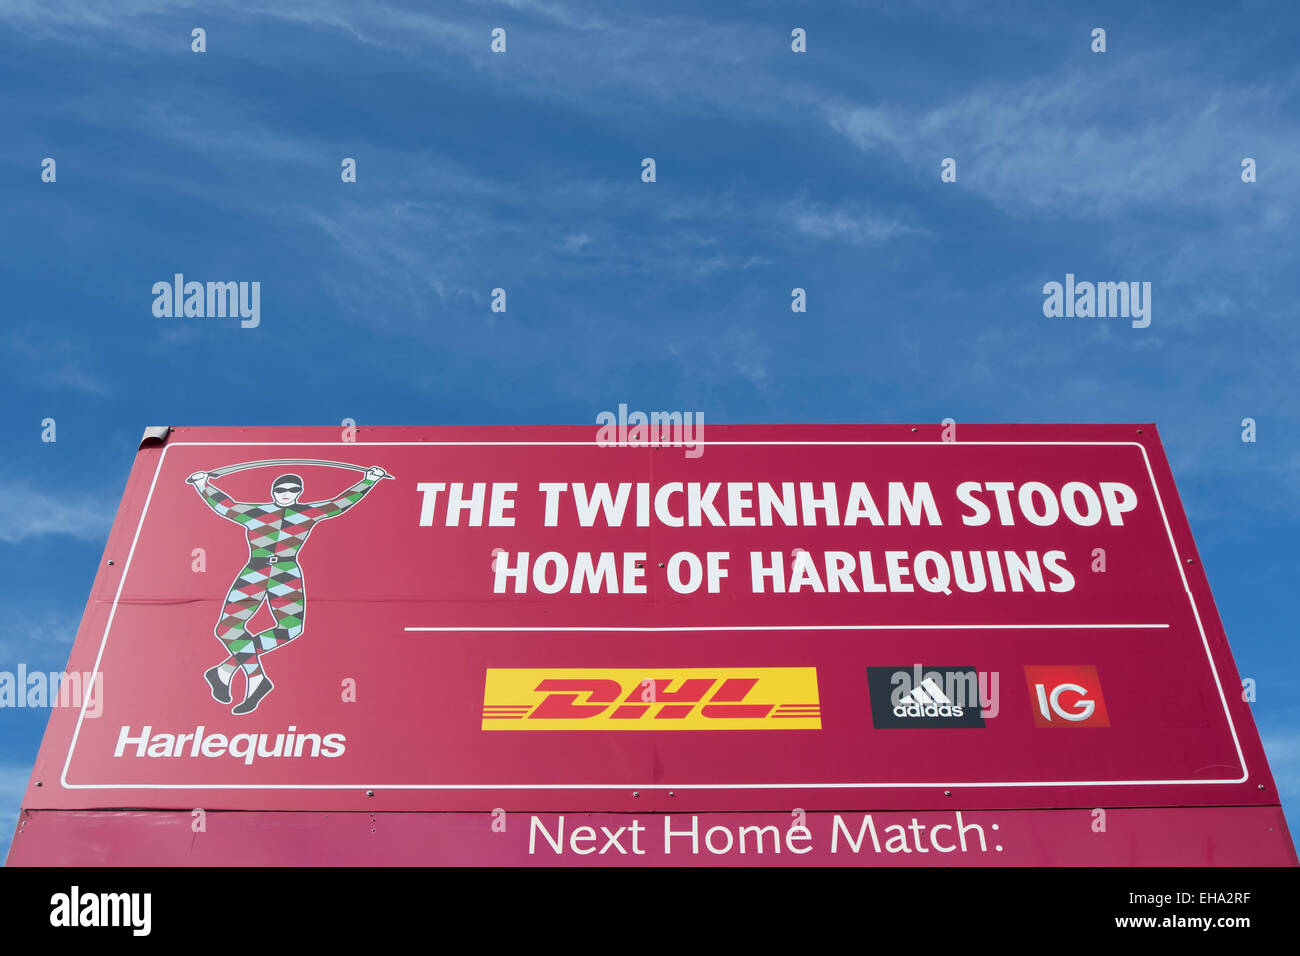 Segno di ingresso alla Stadio di Twickenham Stoop e Stadio di Twickenham, middlesex, Inghilterra Foto Stock